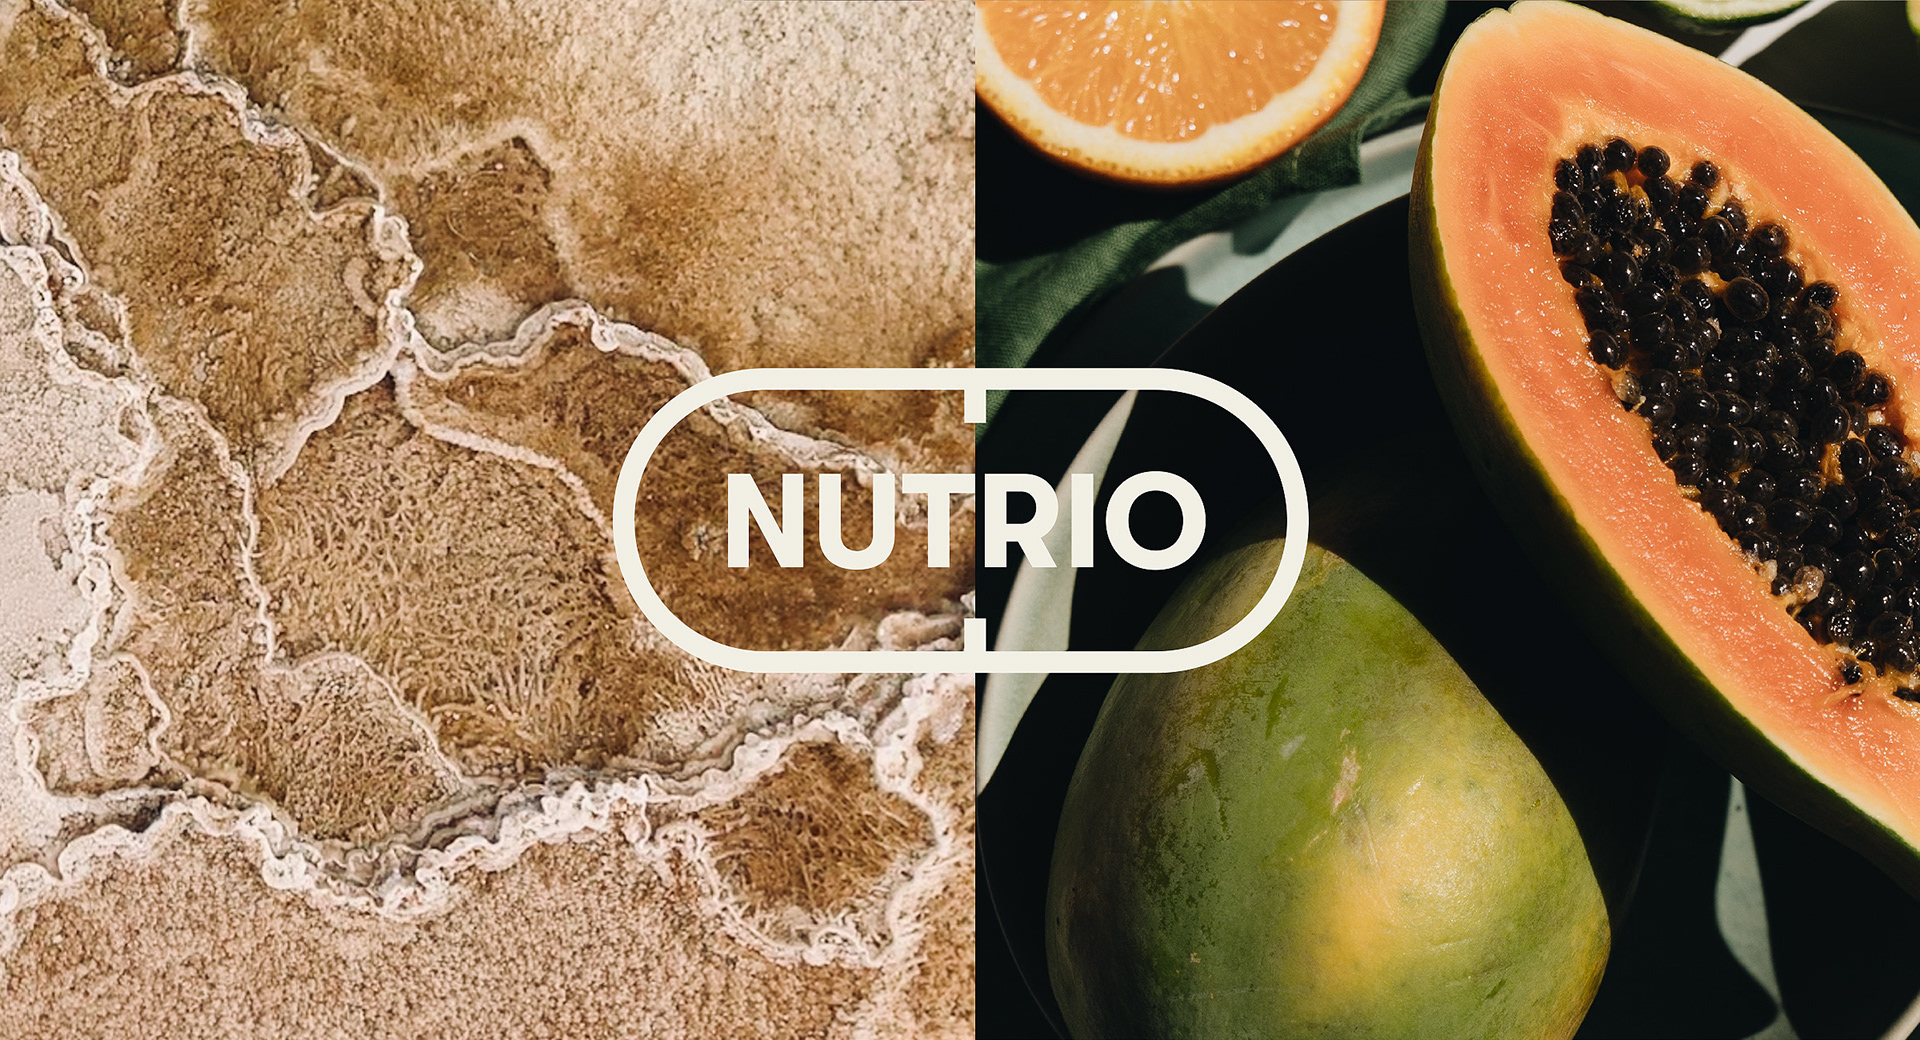 Nutrio Packaging Design